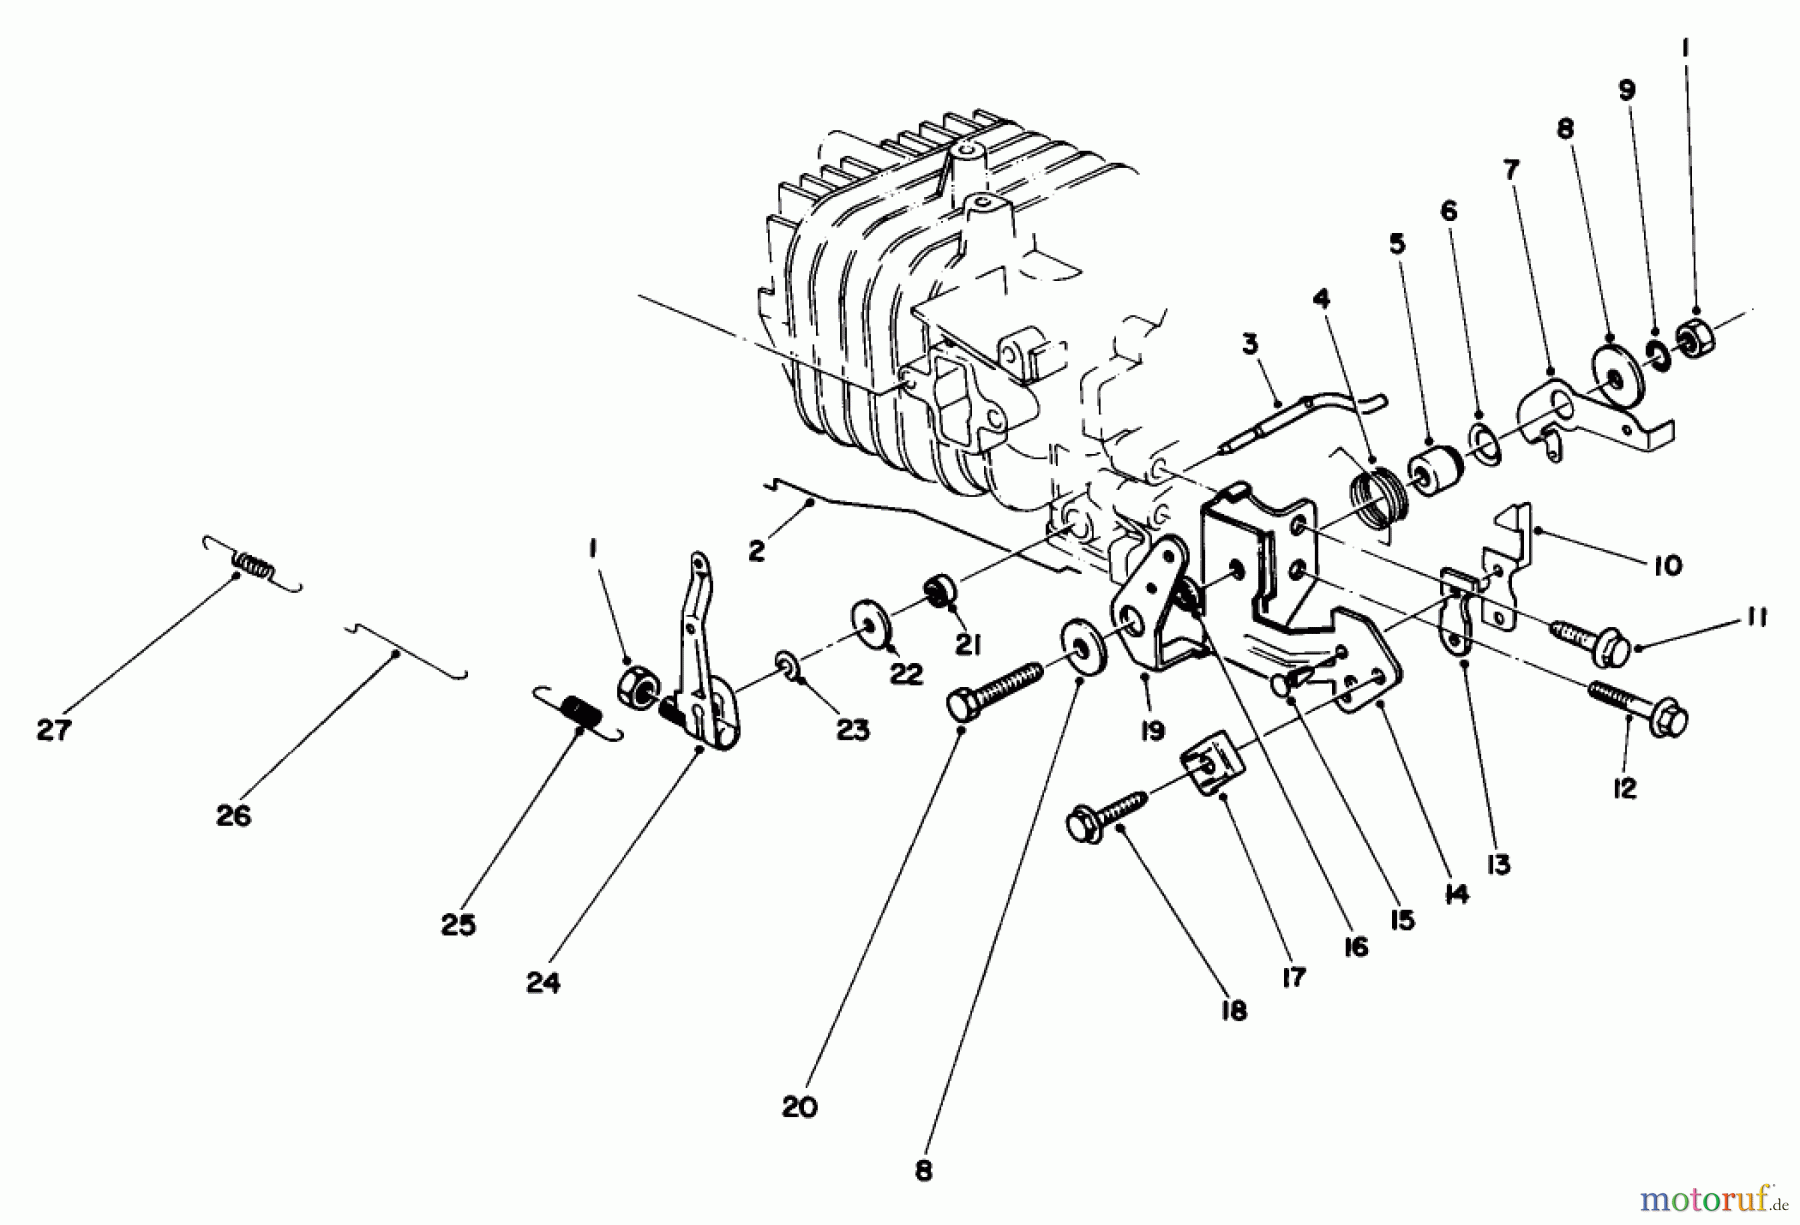  Toro Neu Mowers, Walk-Behind Seite 2 22030 - Toro Lawnmower, 1987 (7000001-7999999) ENGINE ASSEMBLY MODEL NO. 47PG6 #4